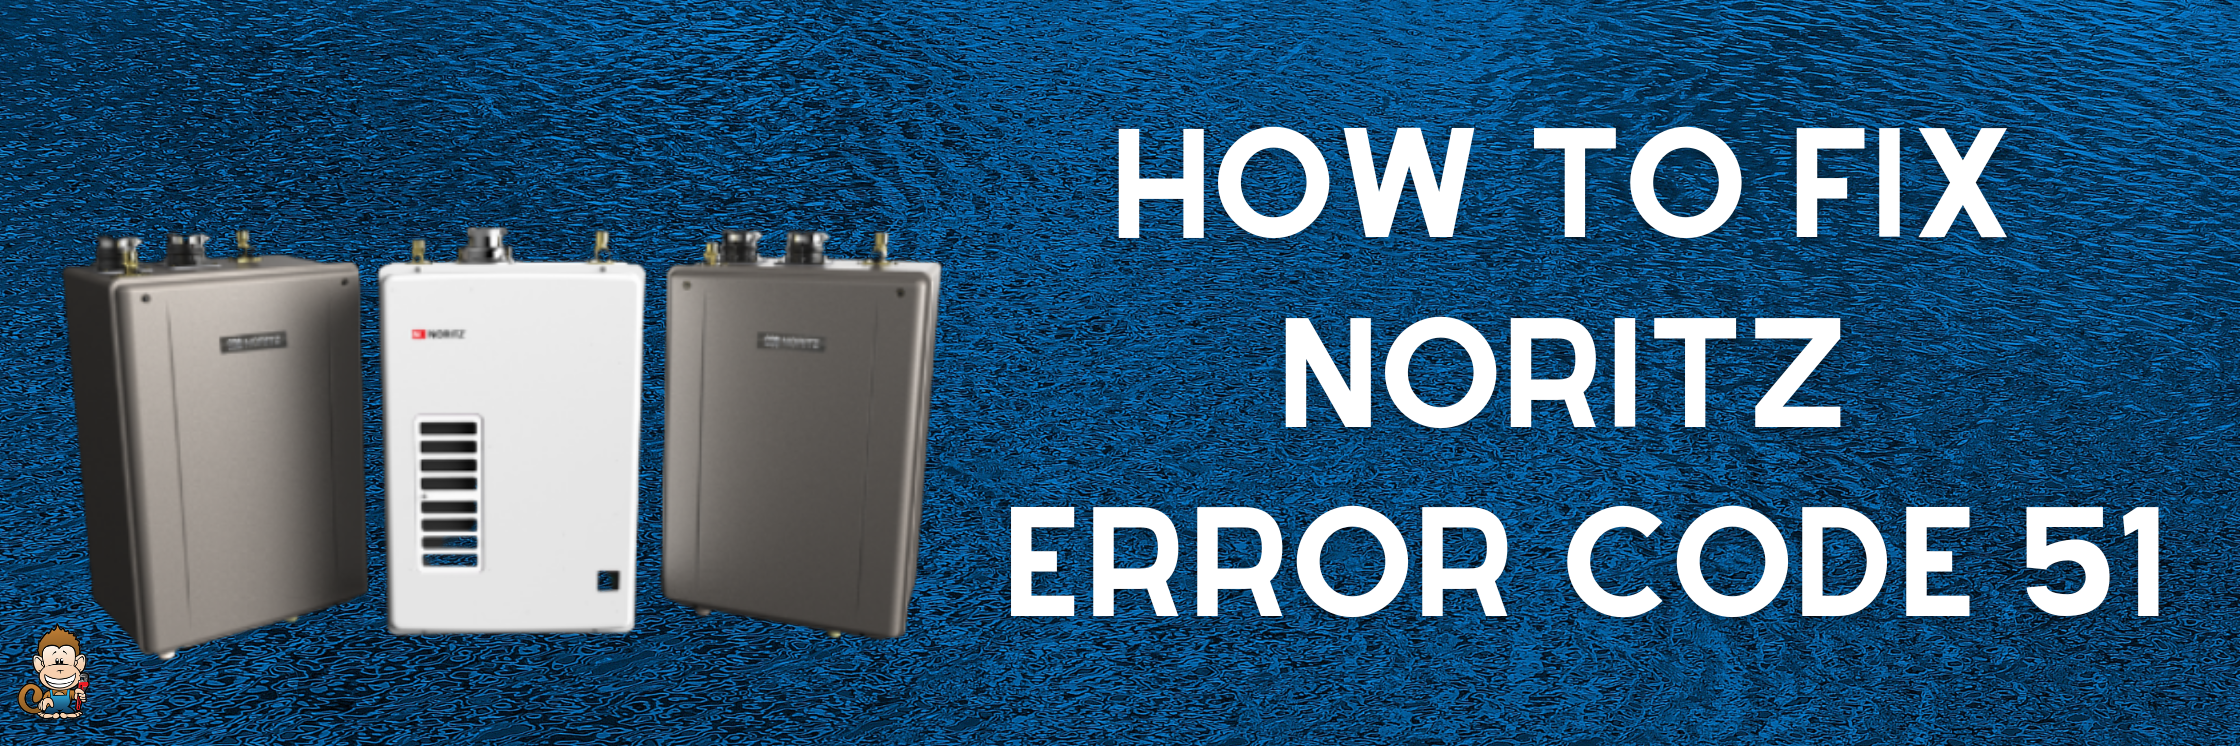 How to Fix Noritz Error Code 51